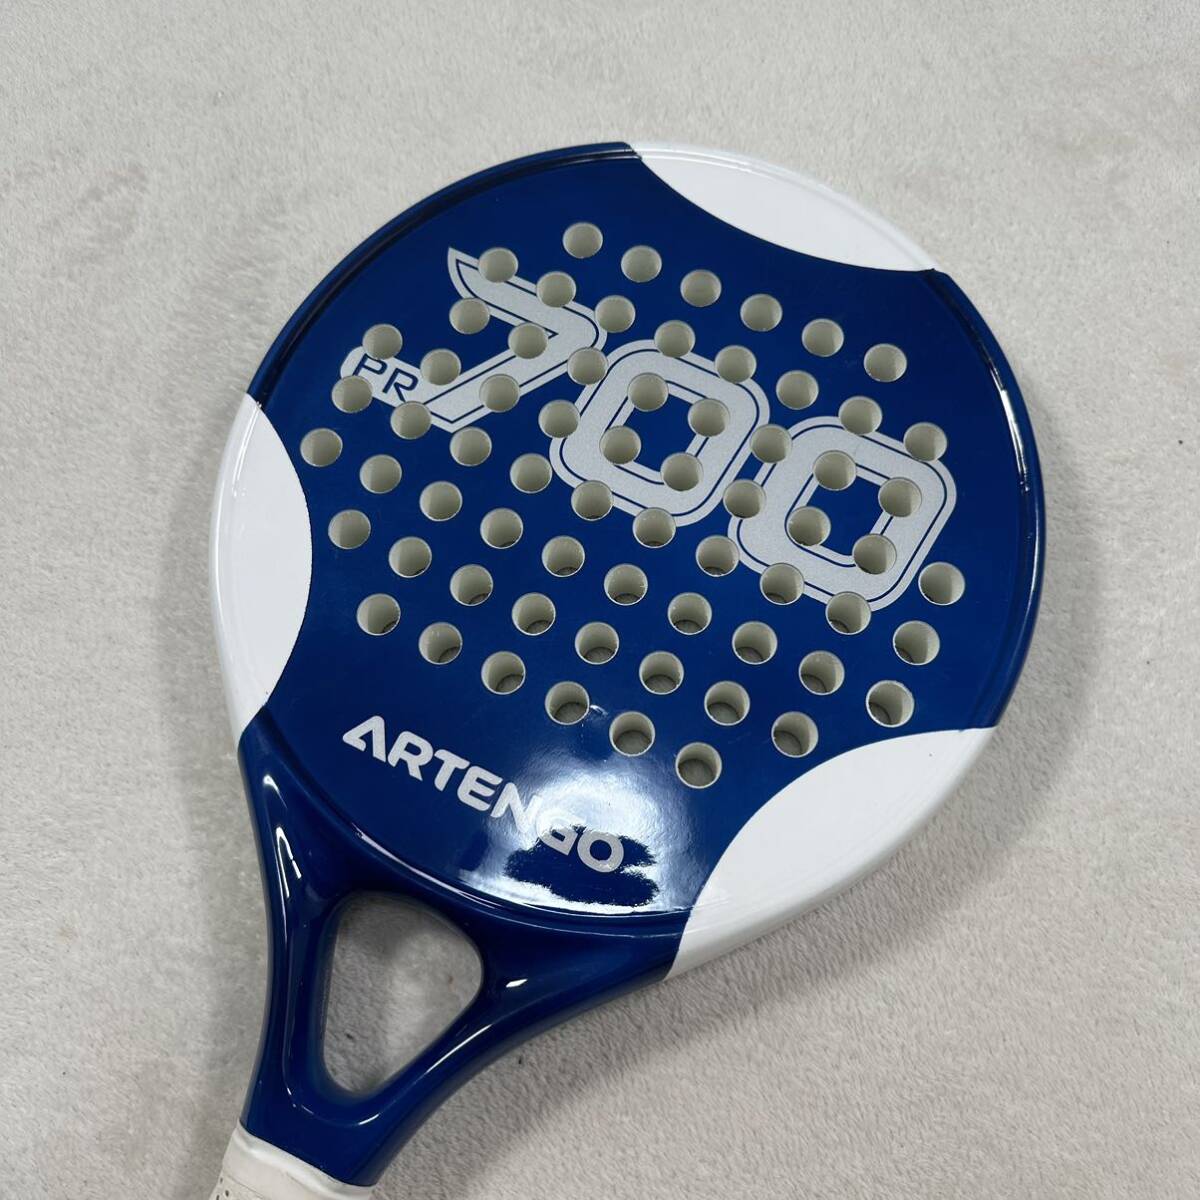 ARTENGO パデルラケット pr700 アルテンゴ パデル テニス ラケット